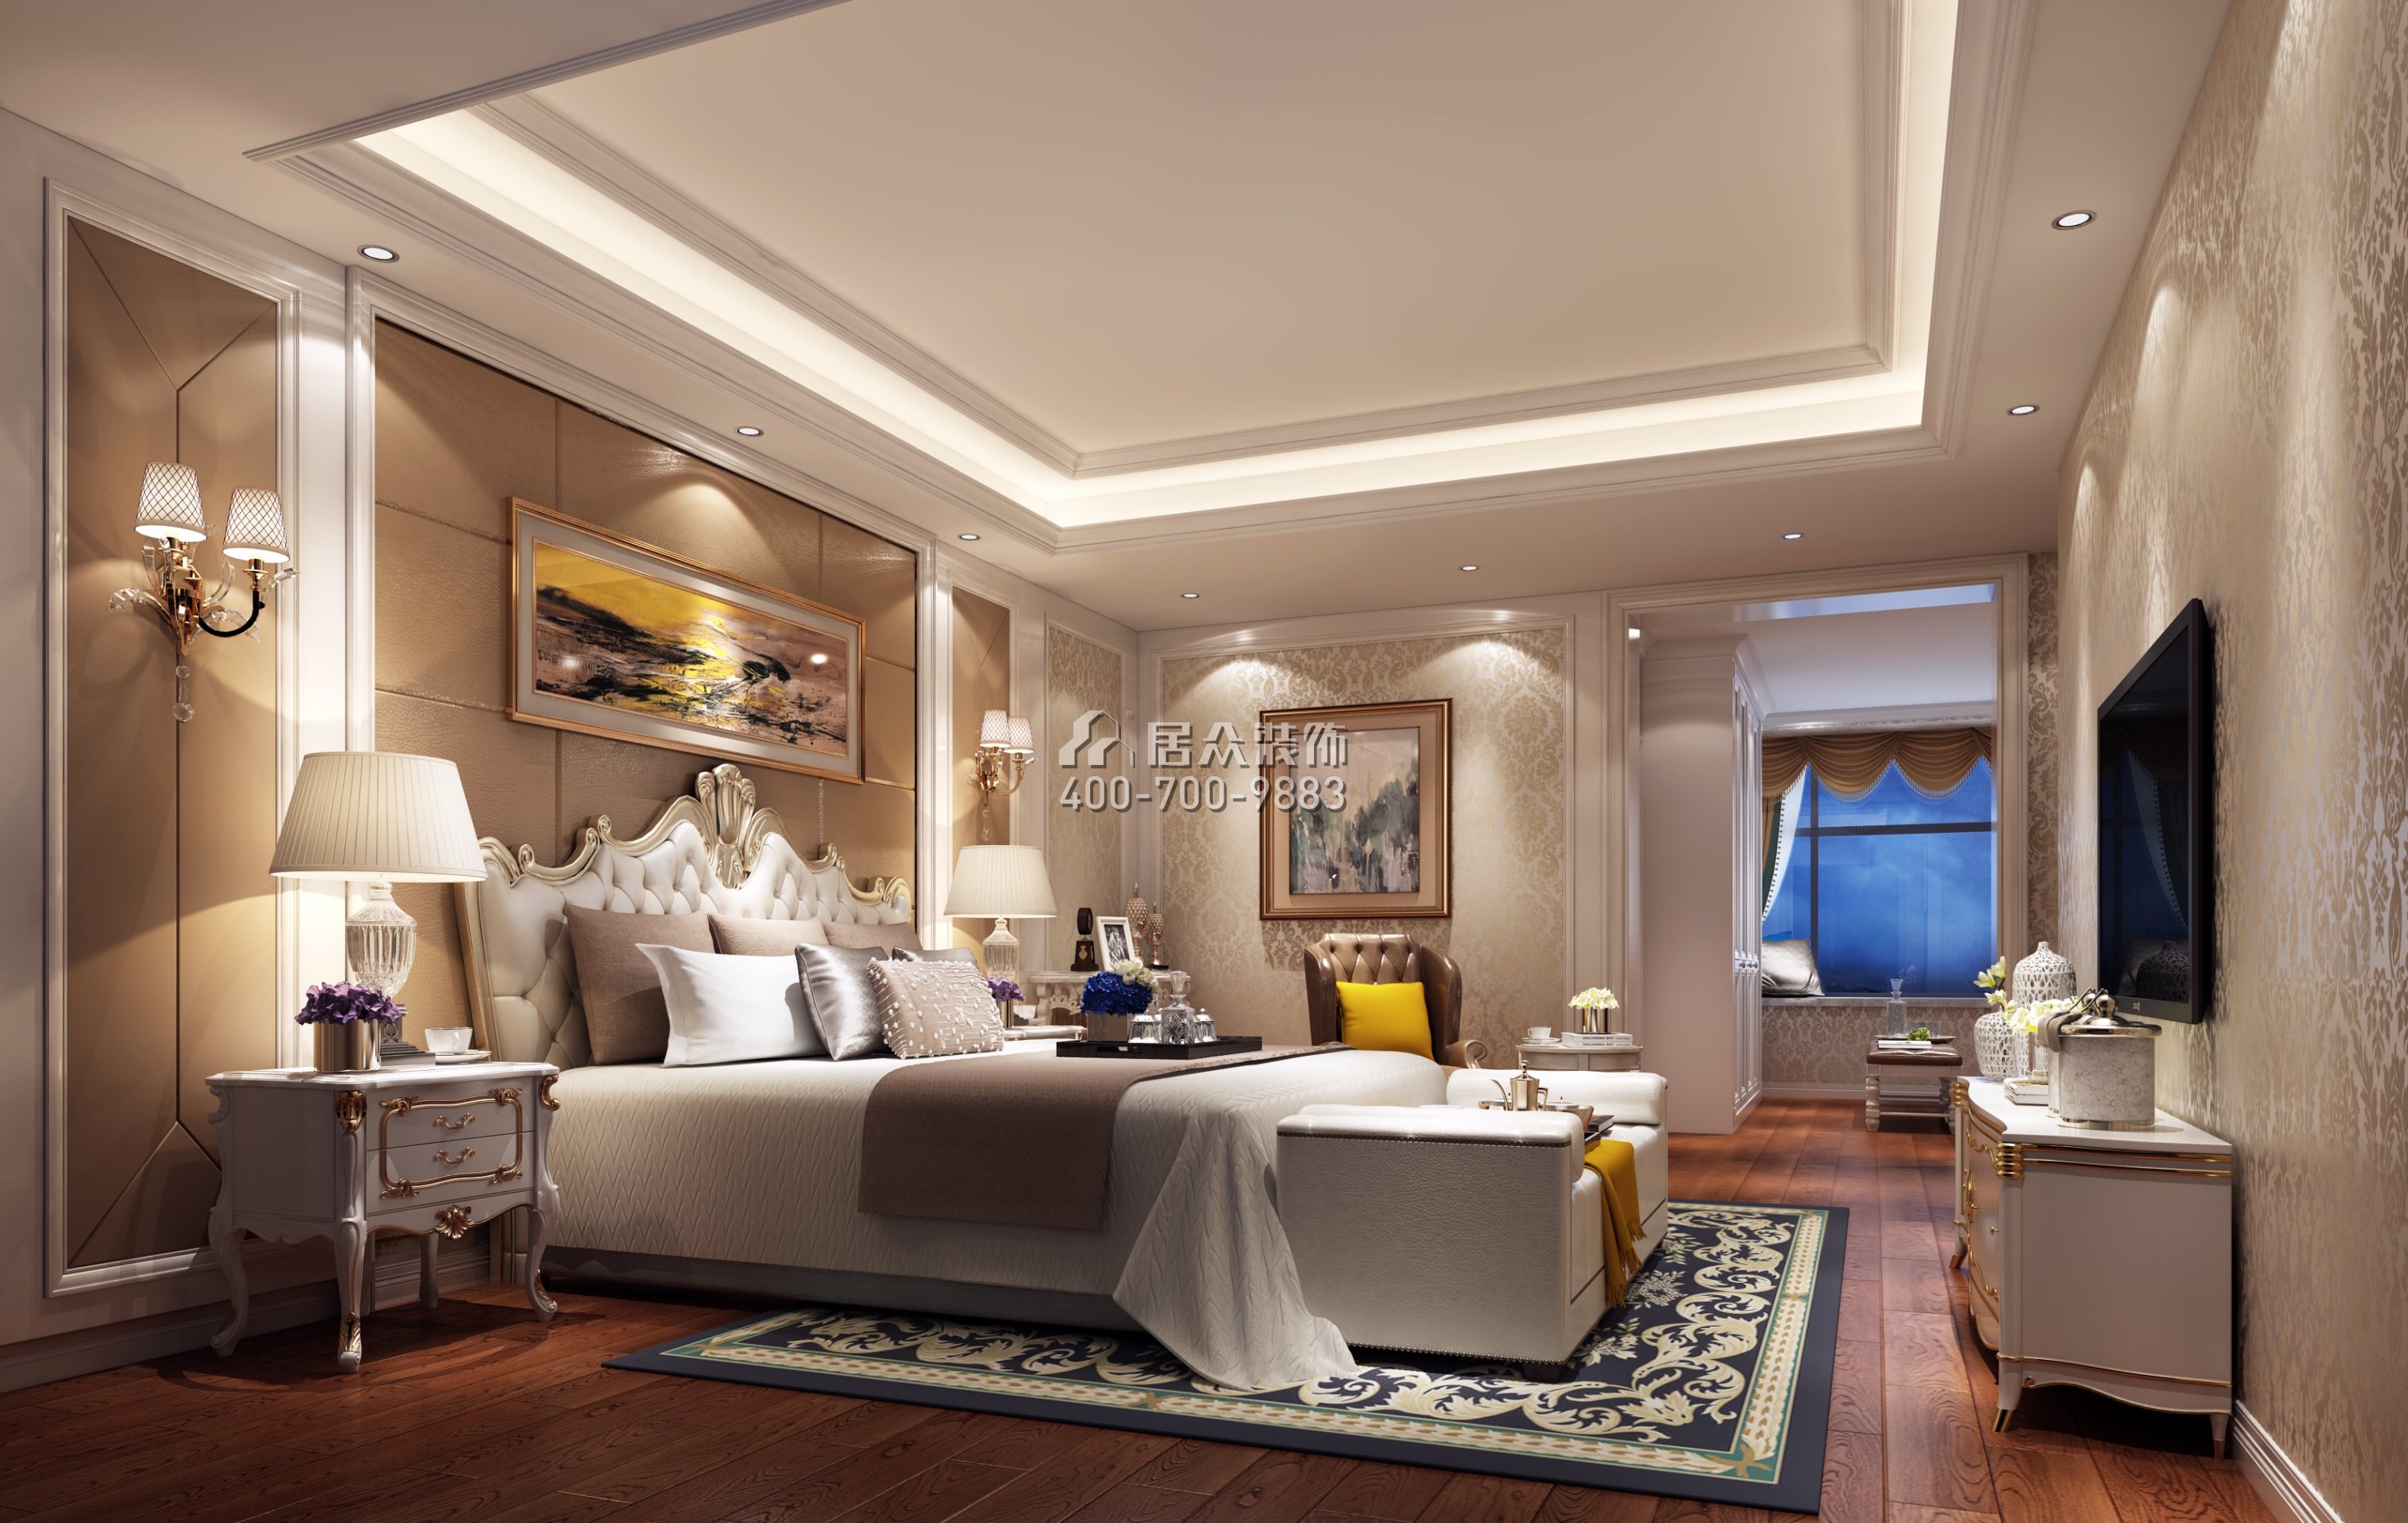 中洲中央公园二期260平方米欧式风格平层户型卧室装修效果图